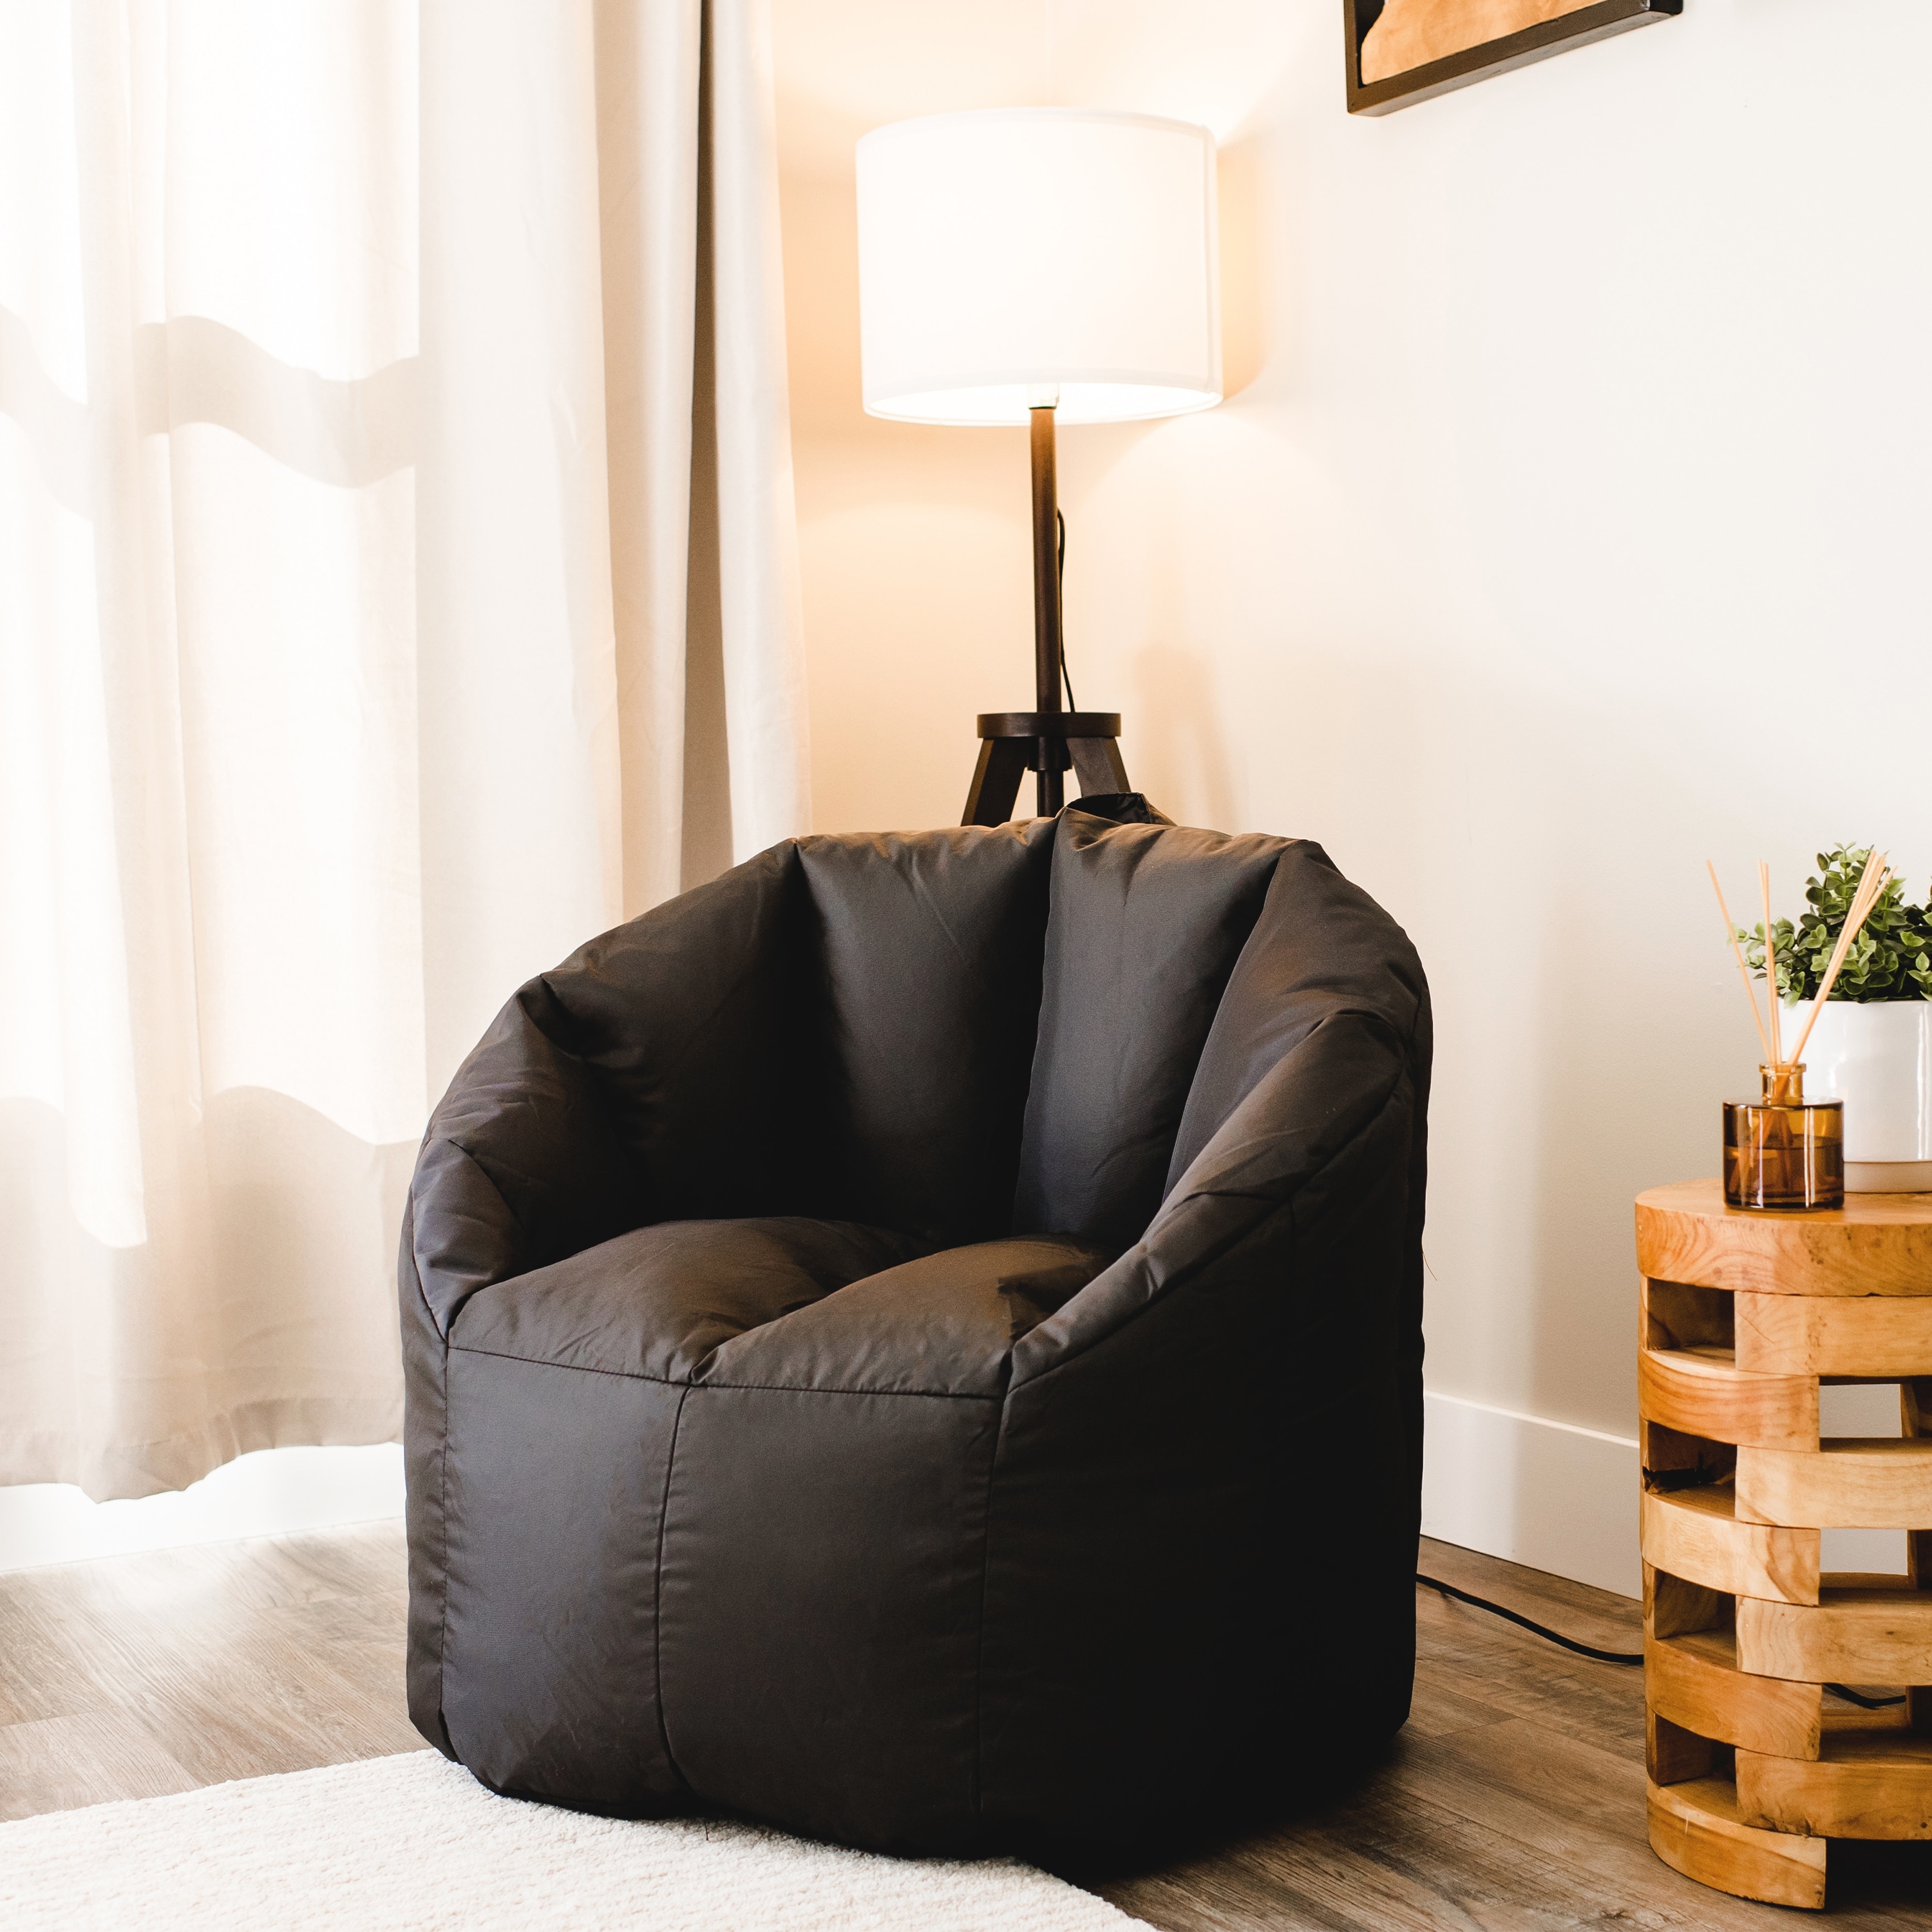 Shop Bean Bag Chair Online | Home Centre UAE